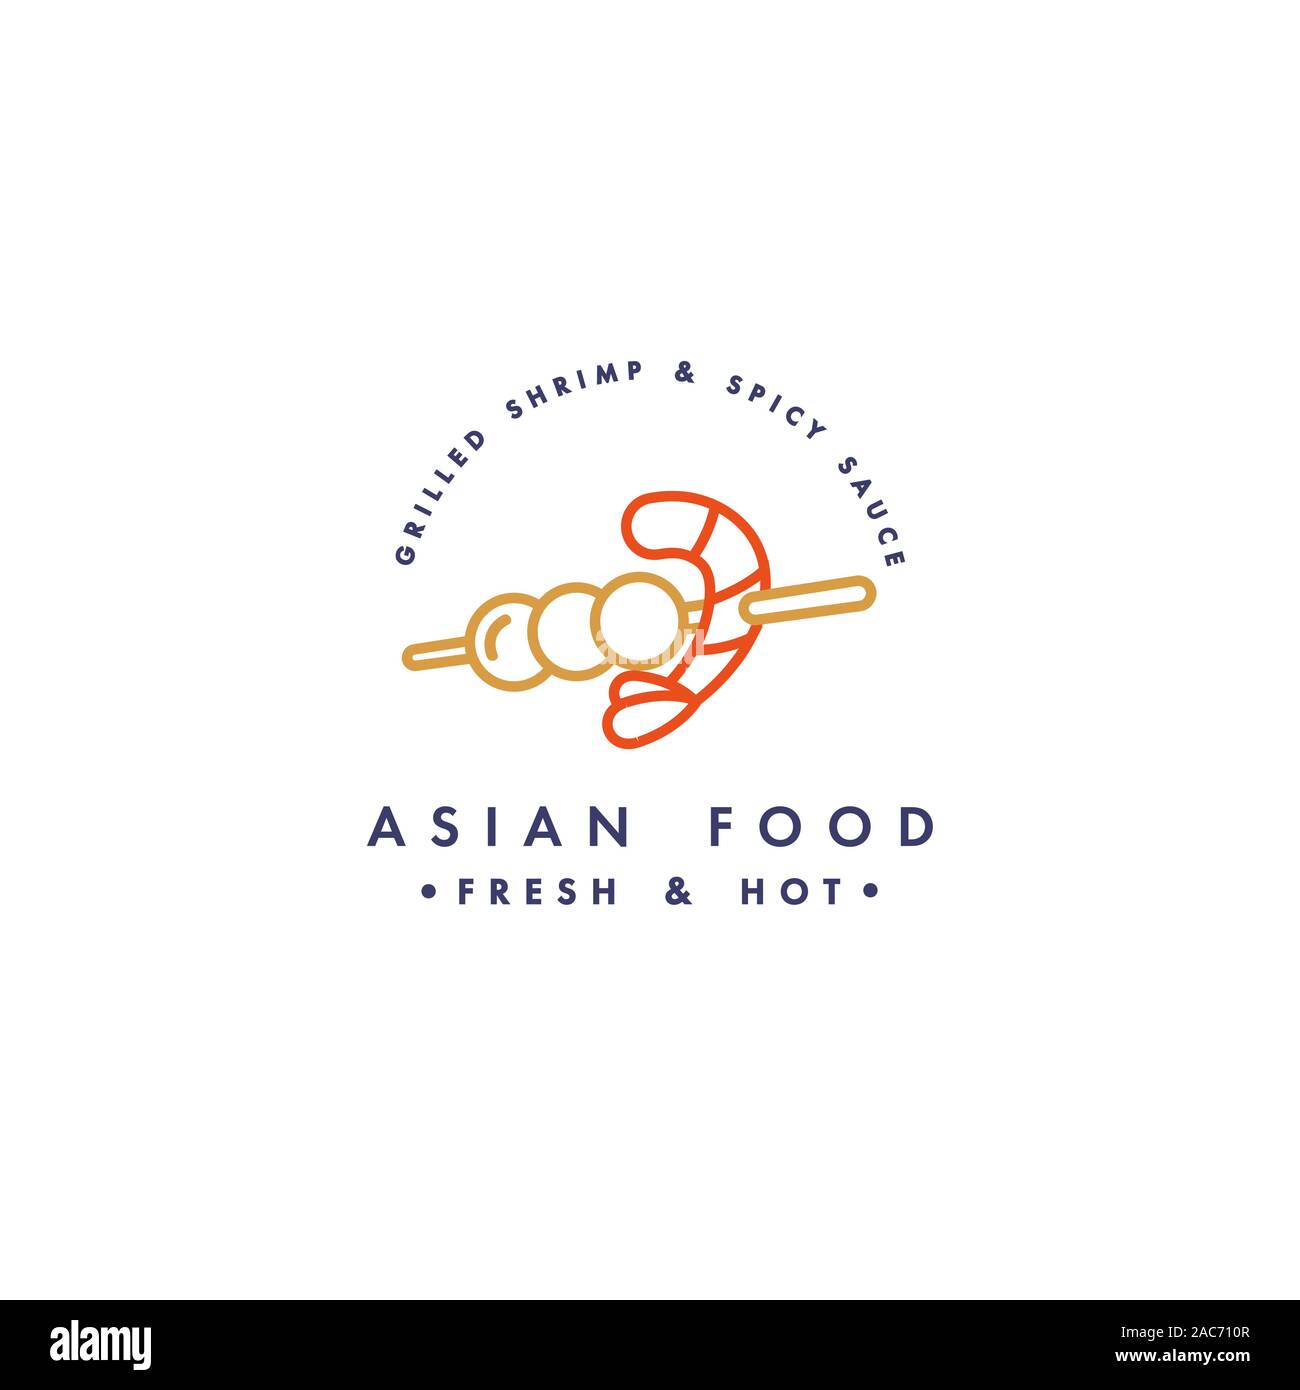 Logo Vector et modèle de conception de l'emblème ou logo. Alimentation asiatique - asain kebab avec les crevettes. Logos linéaire, de l'or et de couleur rouge. Illustration de Vecteur